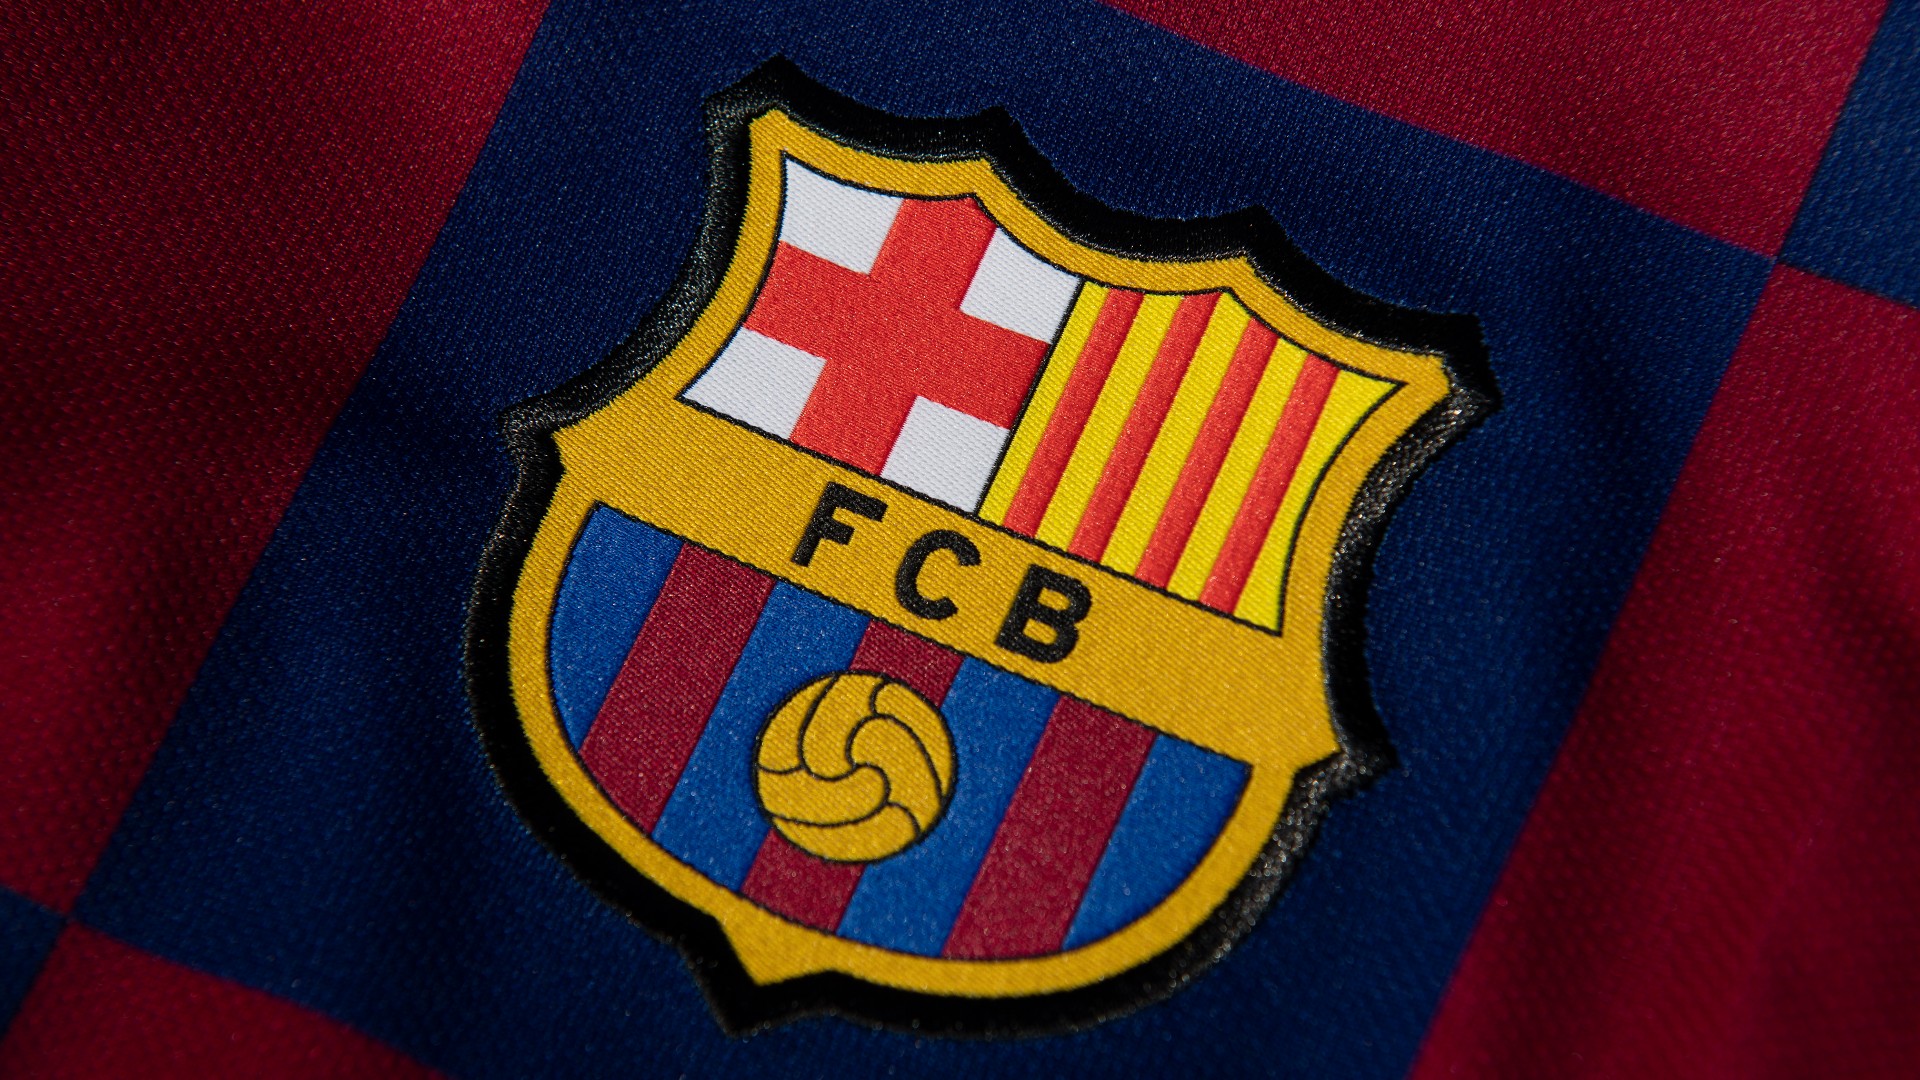 Barcelona legend and Ballon D'or winner, Luis Suarez dies